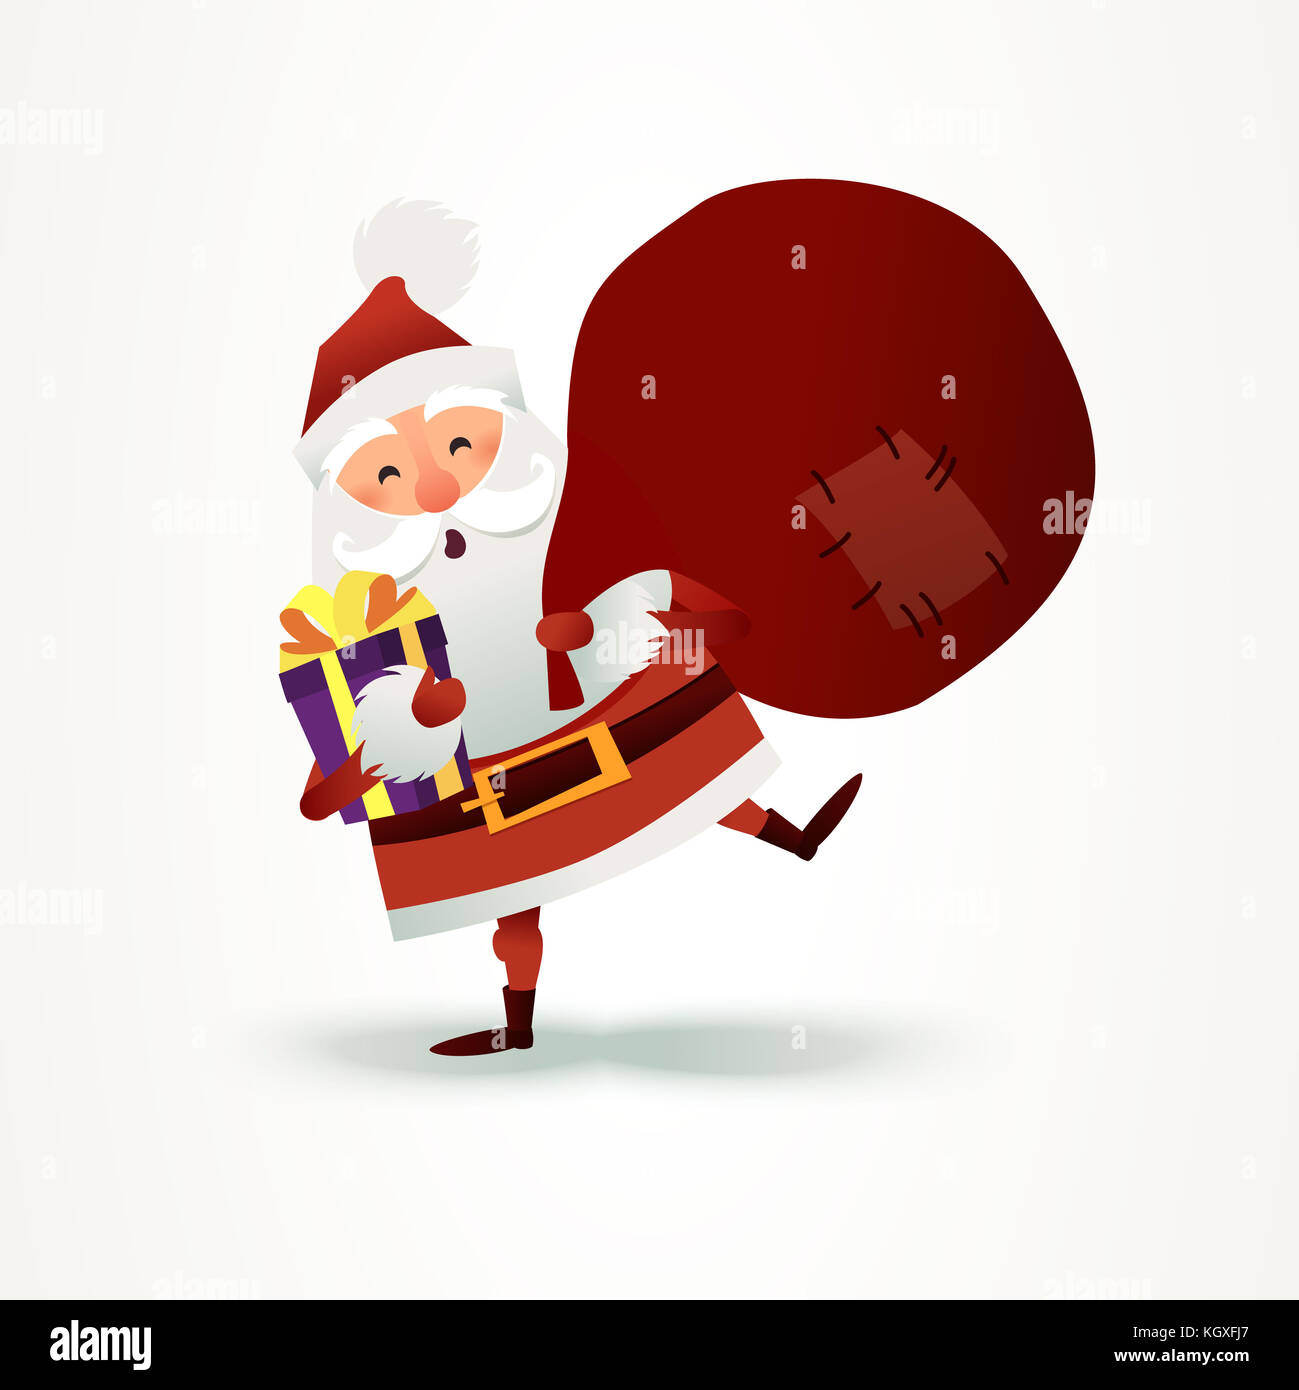 Weihnachtsmann mit Sack voller Geschenk und Geschenkbox. Frohe Weihnachten Vater Cartoon-Figur. Niedlicher Weihnachtsmann für das Weihnachtsdesign. Grußkarte für das neue Jahr zur Einladung, herzlichen Glückwunsch. Flache Abbildung. Ho, Ho, Ho Stockfoto